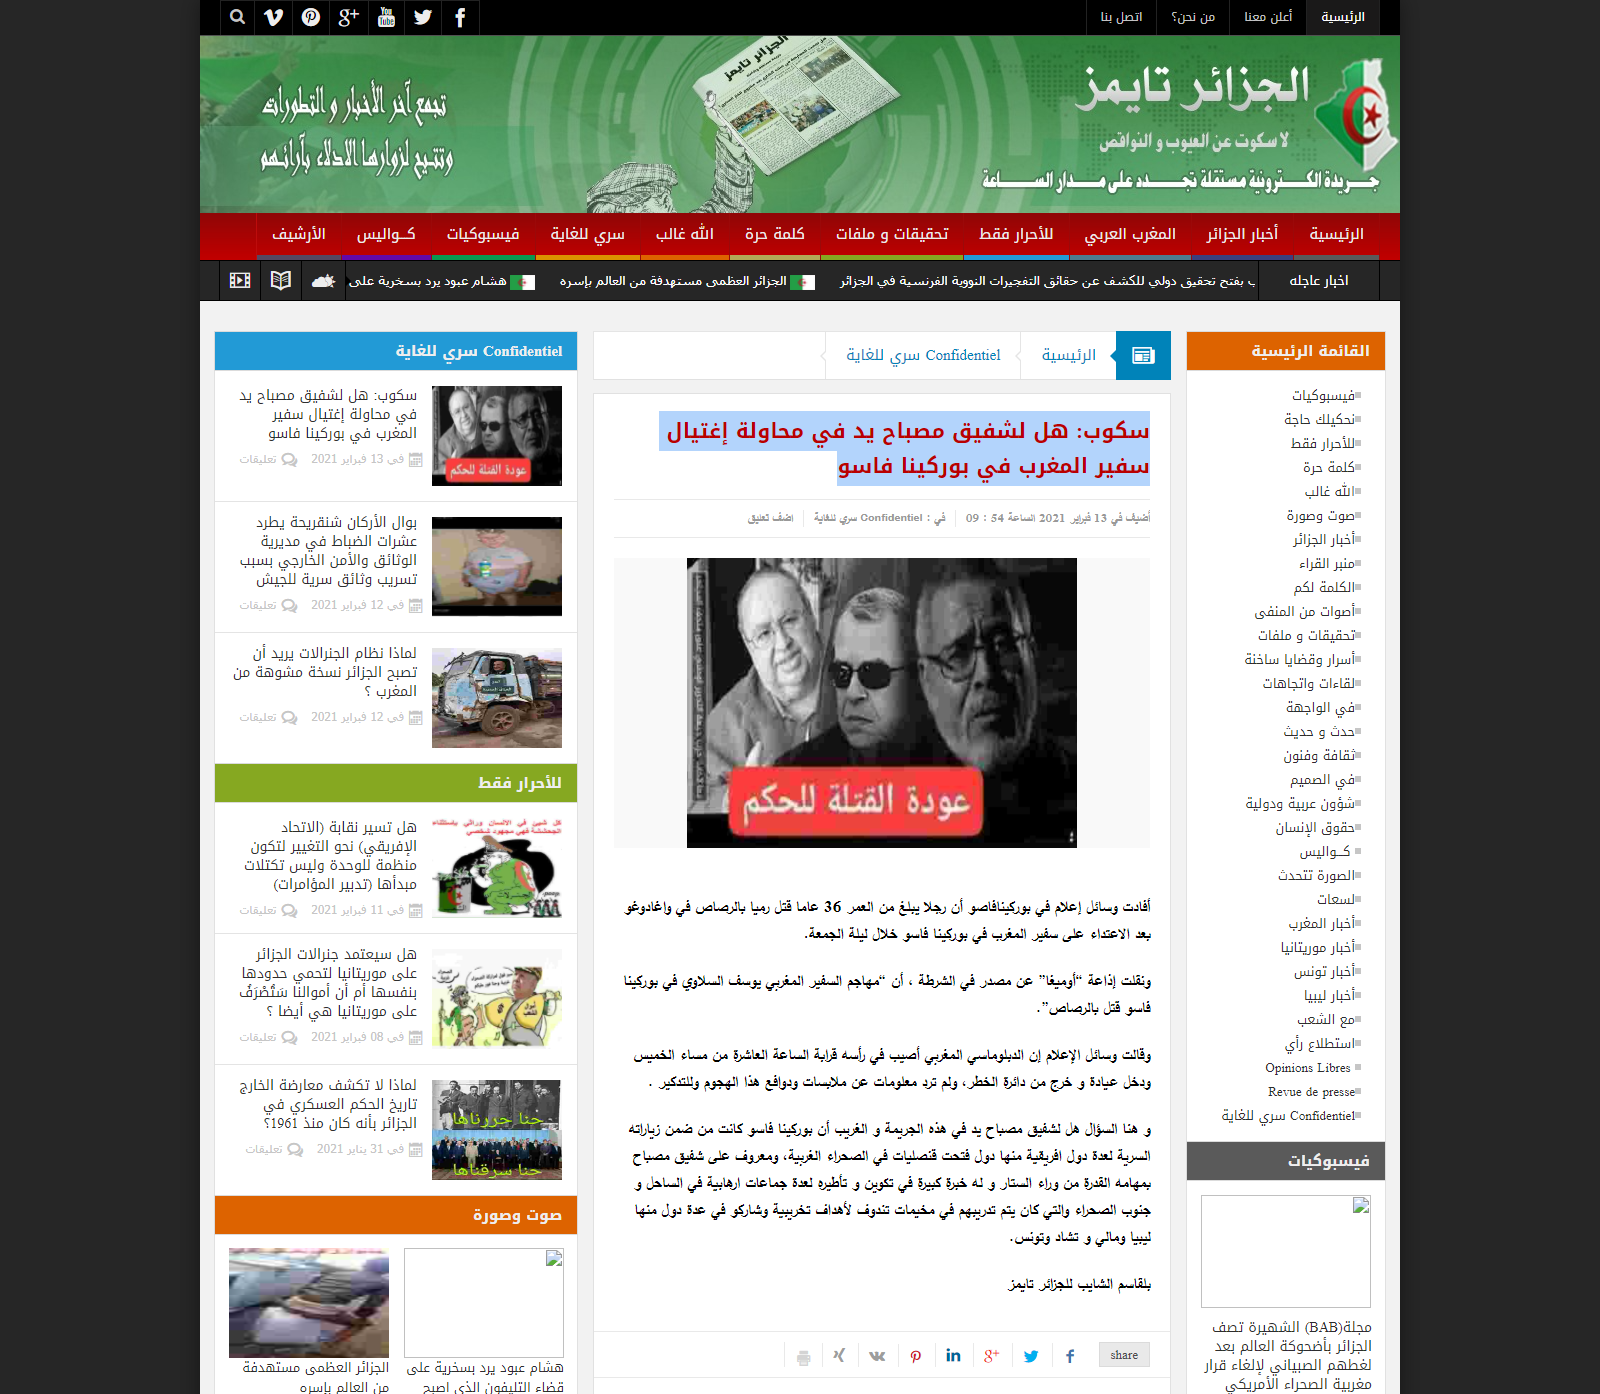 FireShot Capture 022 الجزائر تايمز الجريدة الإكترونية سكوب هل لشفيق مصباح يد في محاولة www.algeriatimes.net